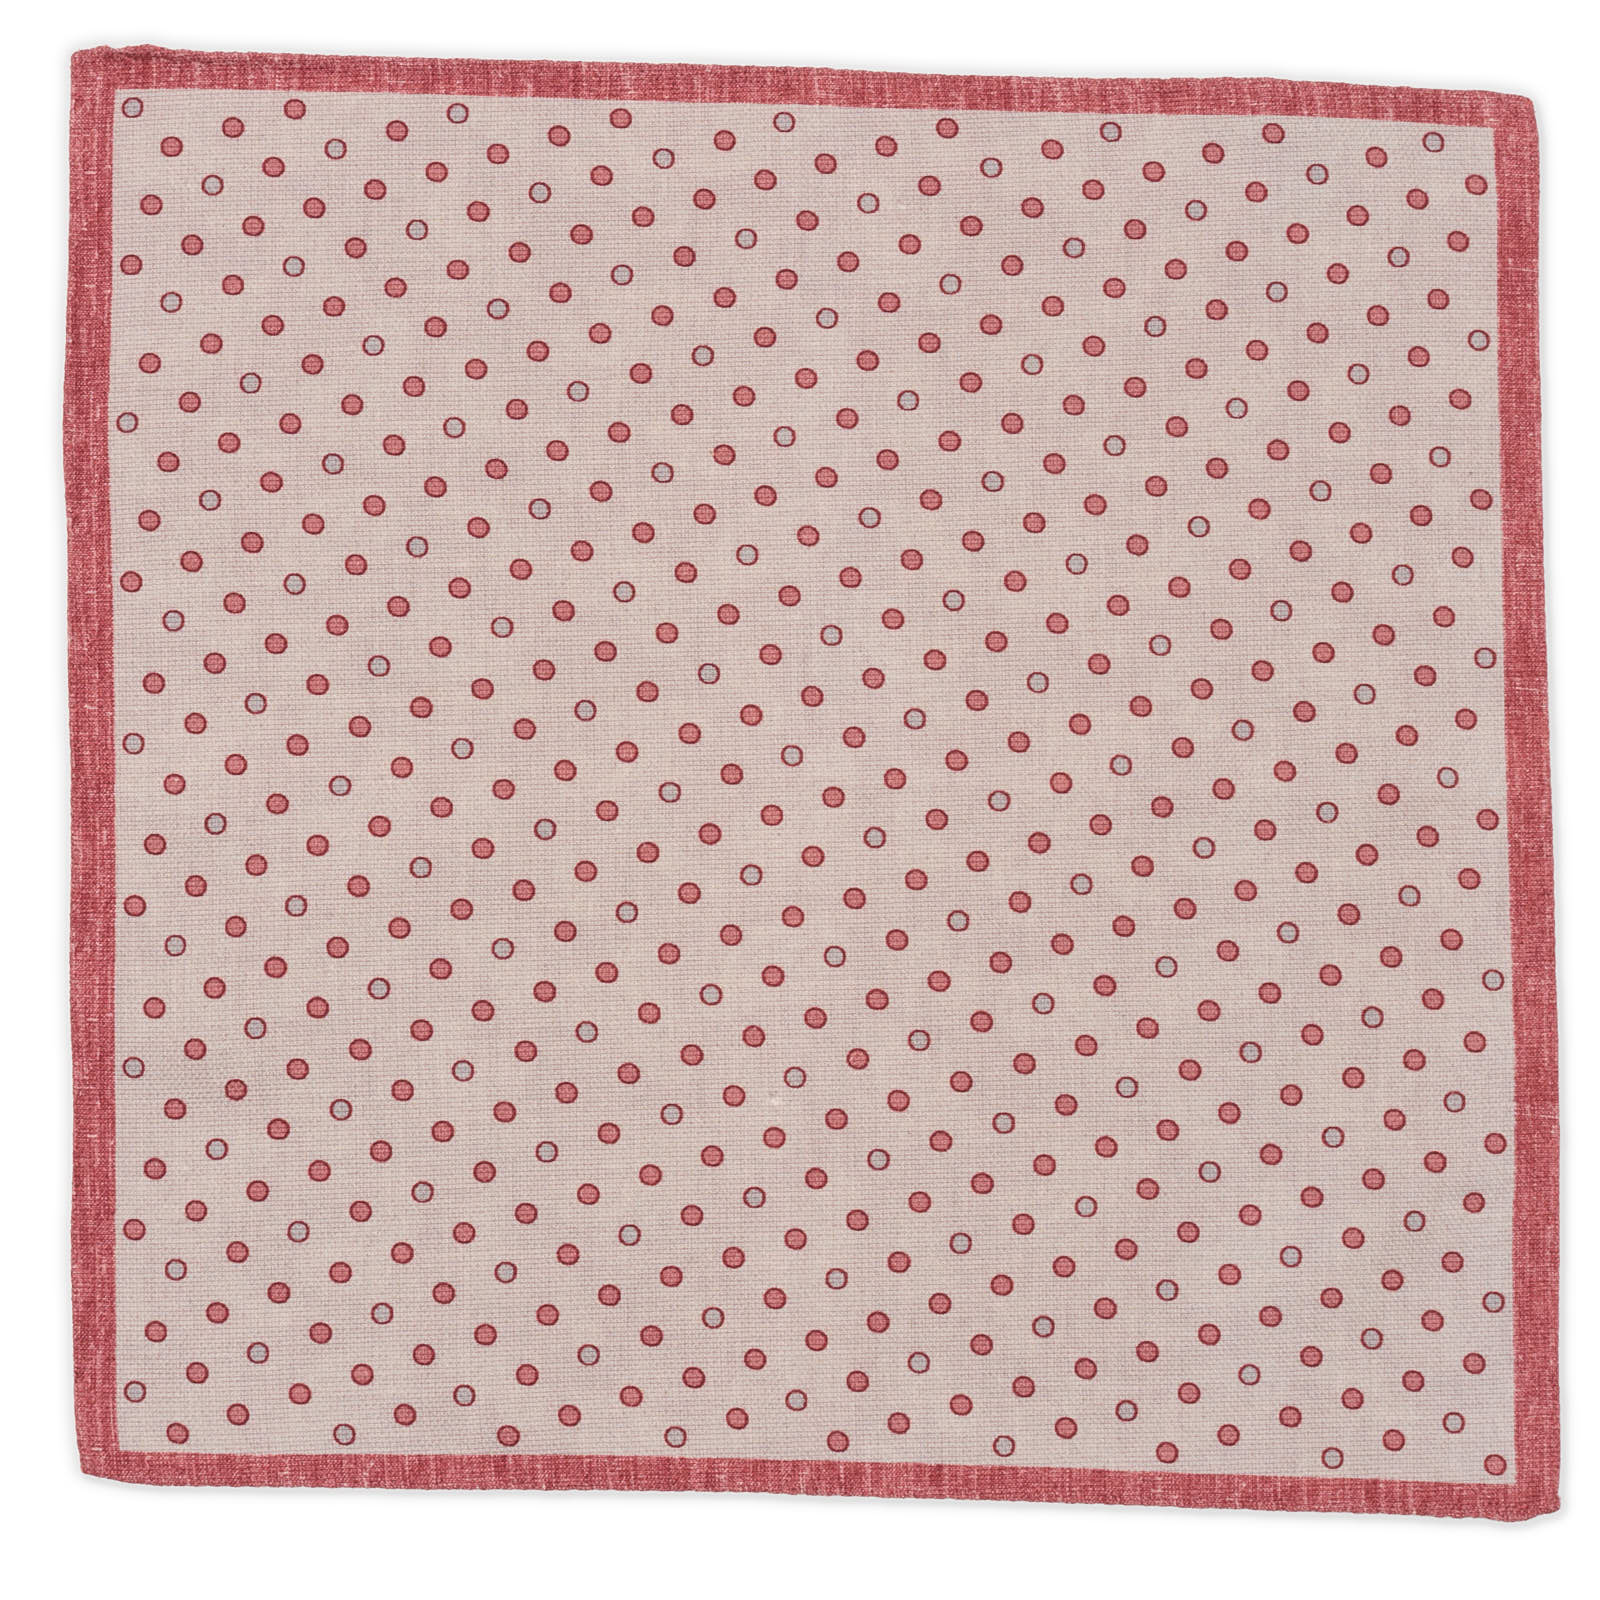 ROSI Handmade Burgundy-White Dot-Paisley Cotton-Linen Pocket Square NEW 33cm x 32cm